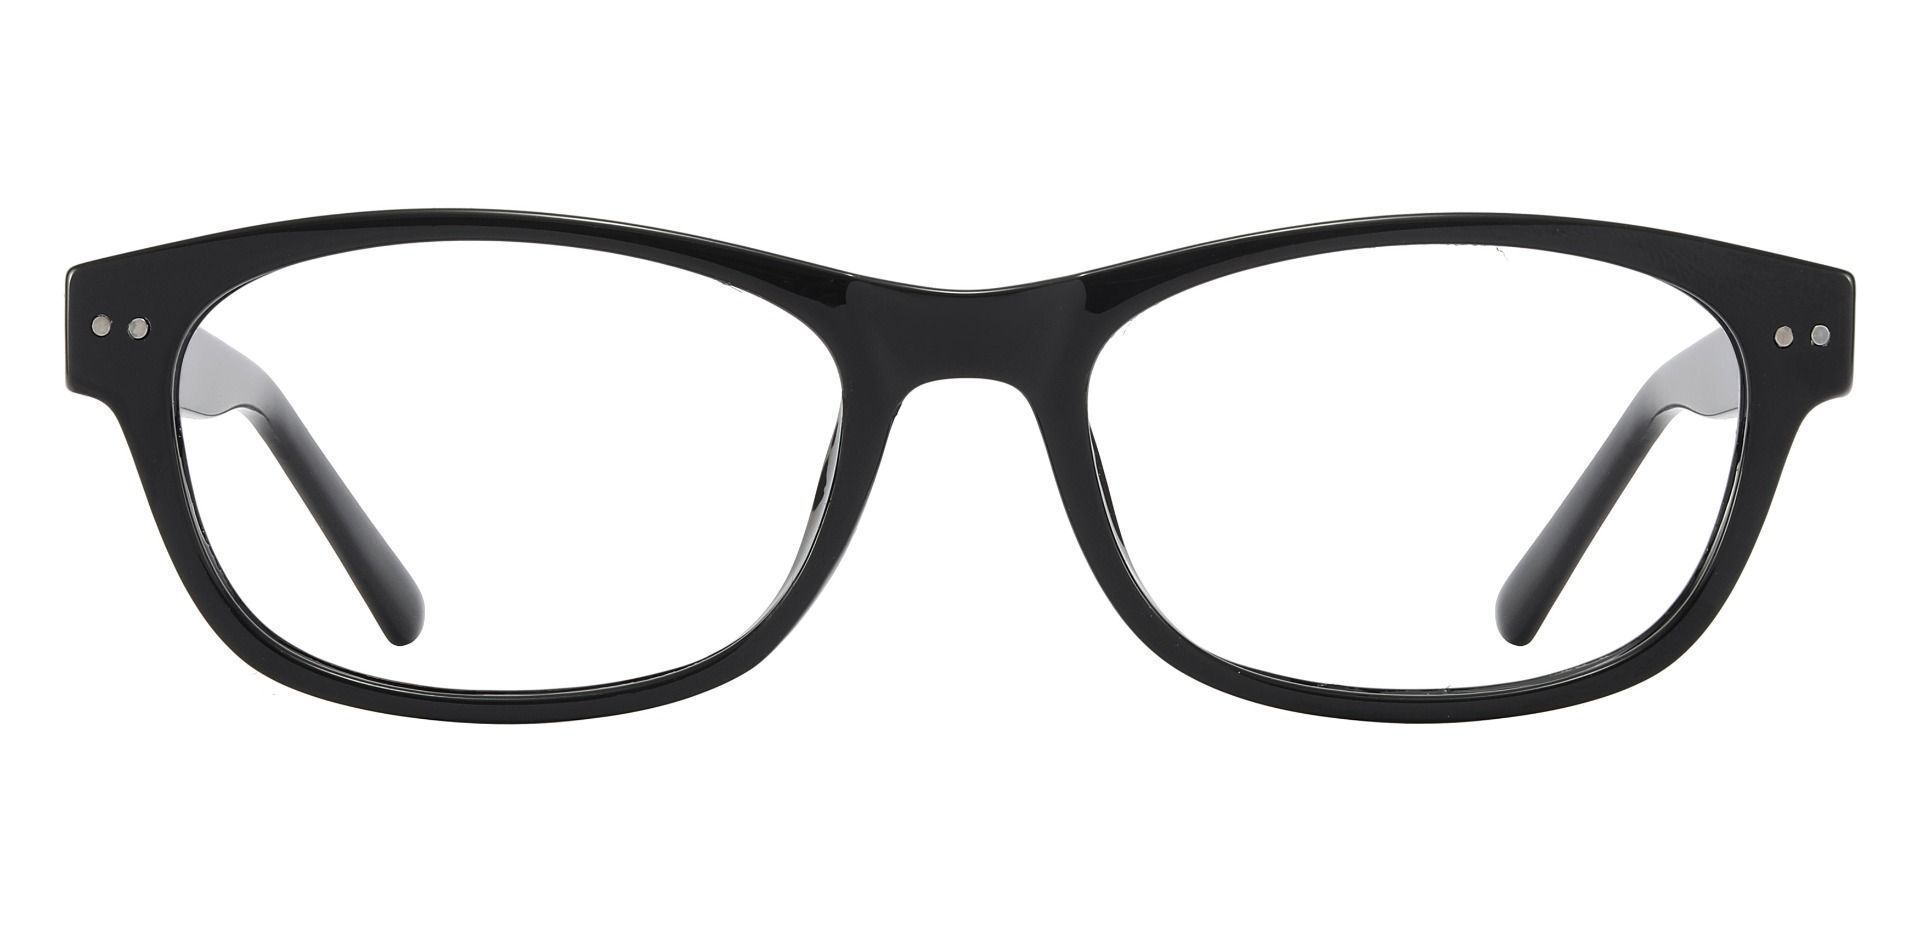 Shaw Oval Prescription Glasses - Black